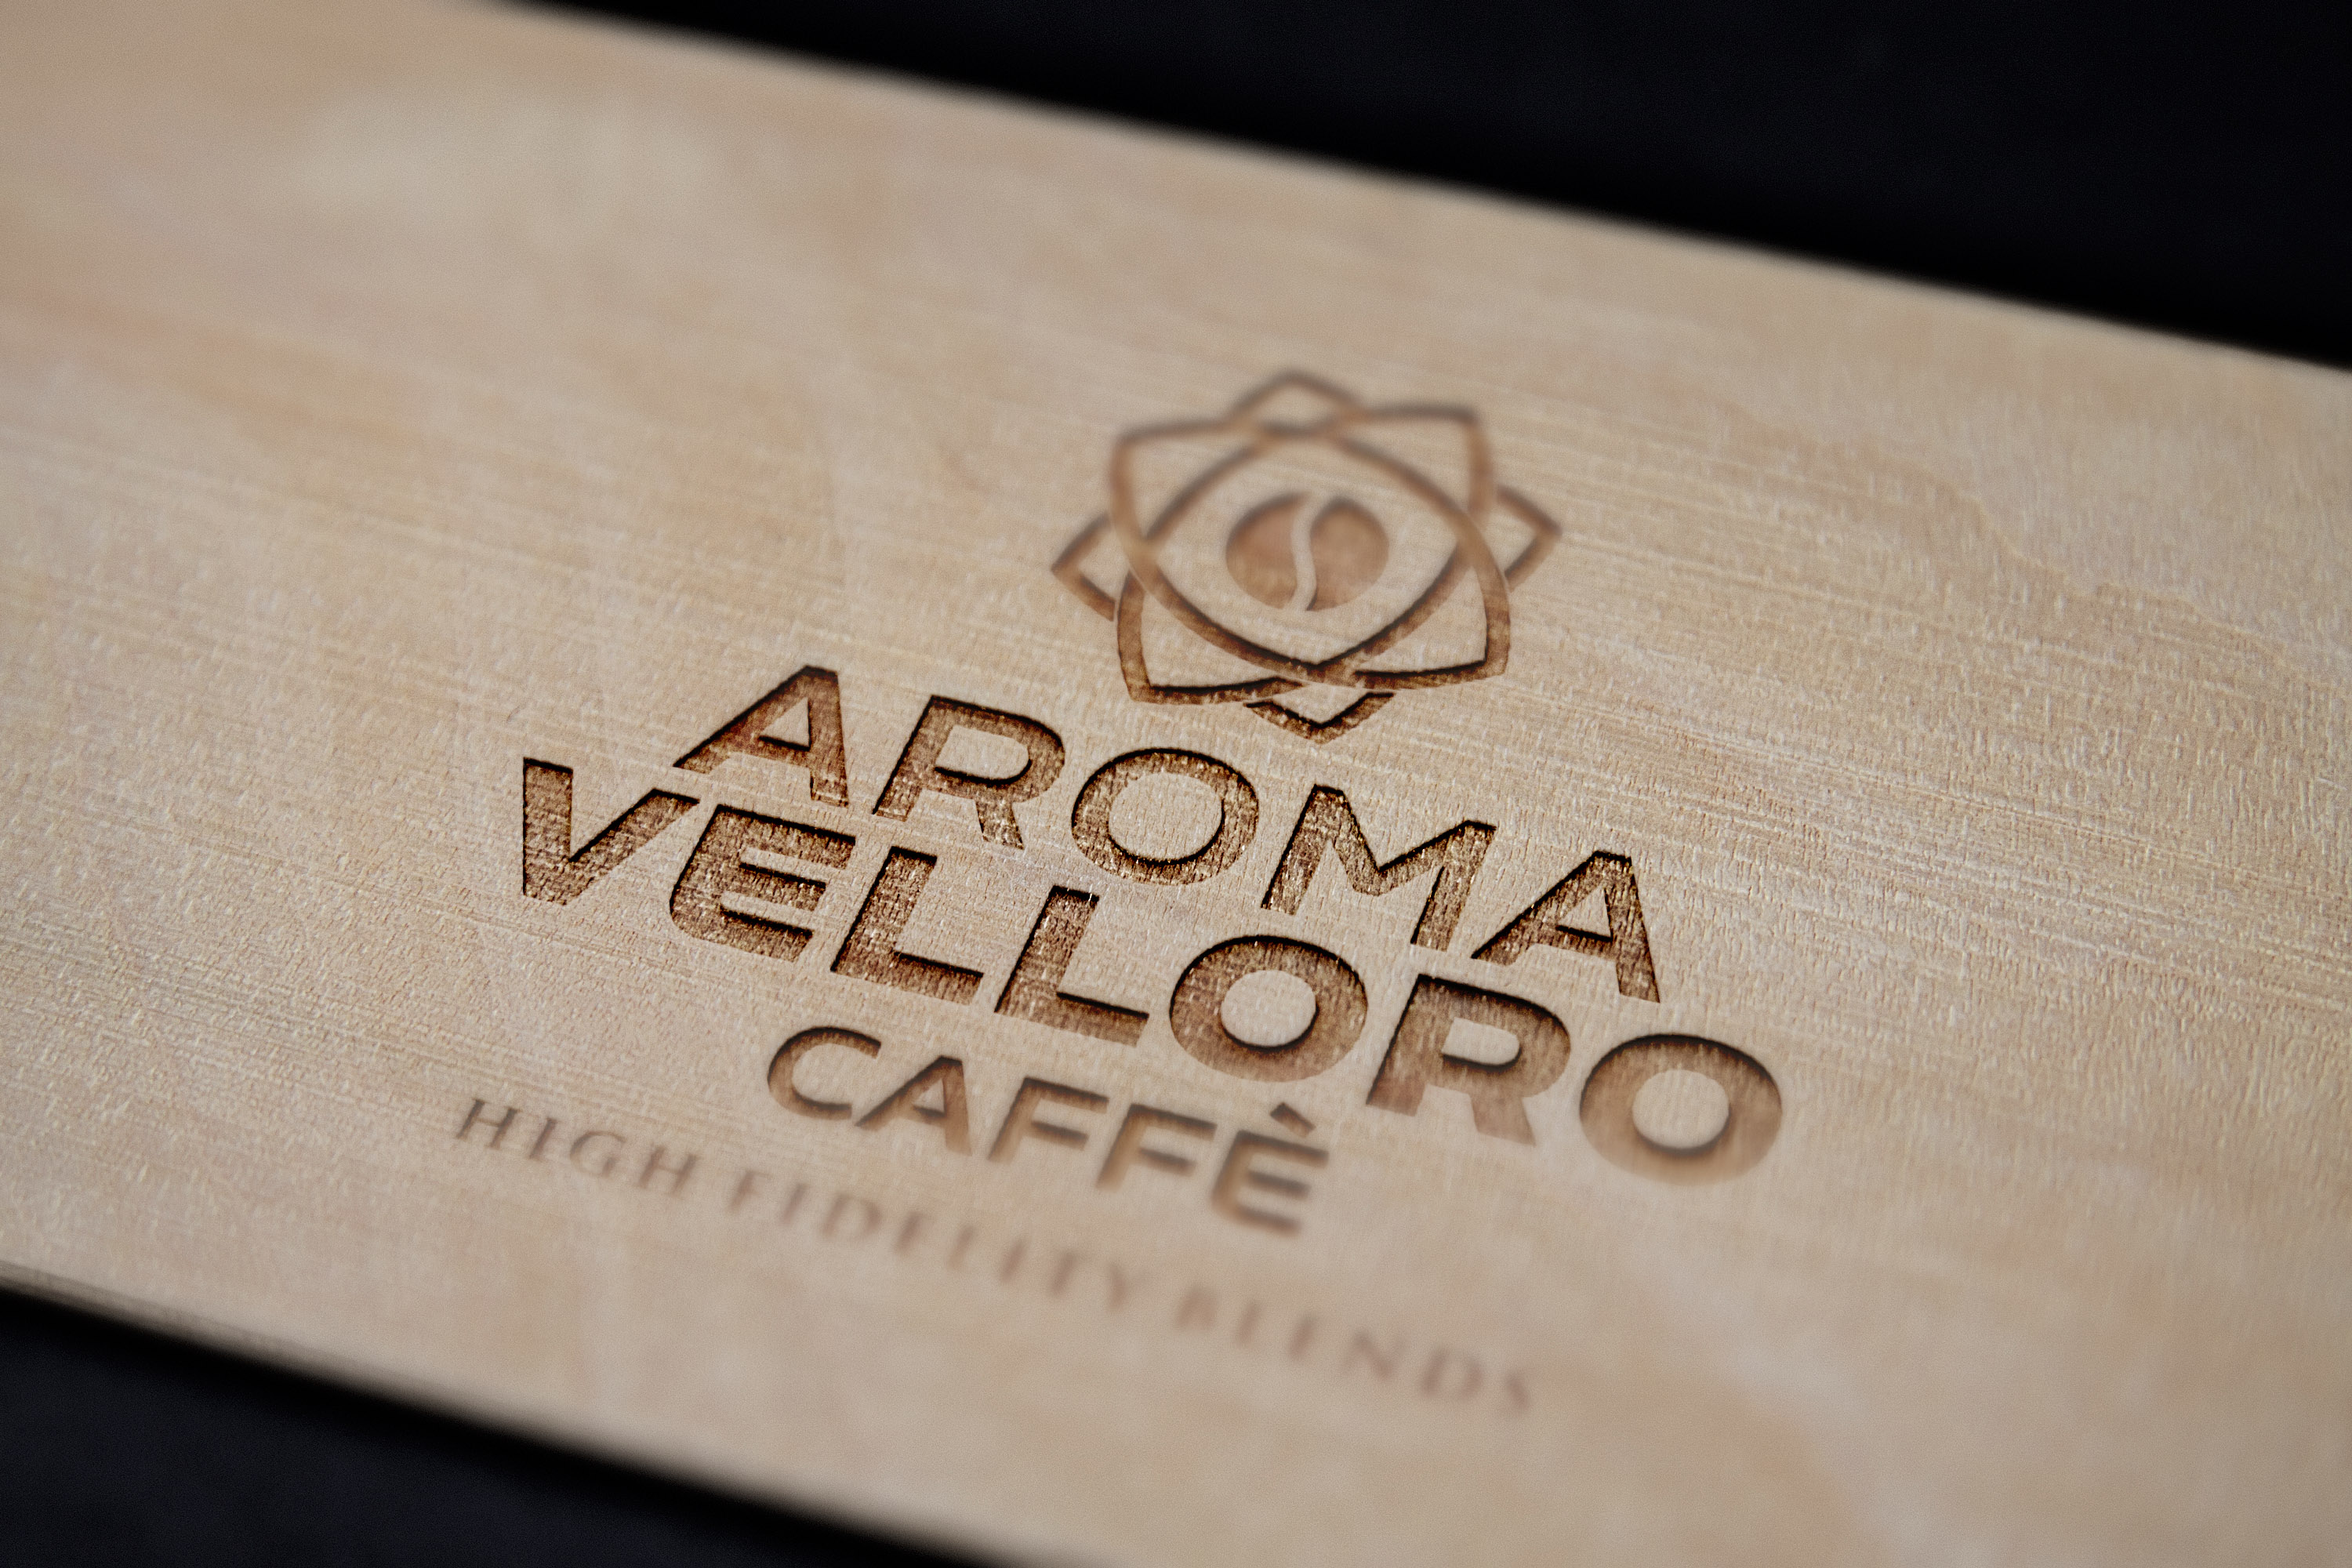 Aroma Velloro caffē; branding, cid & packaging, 2018